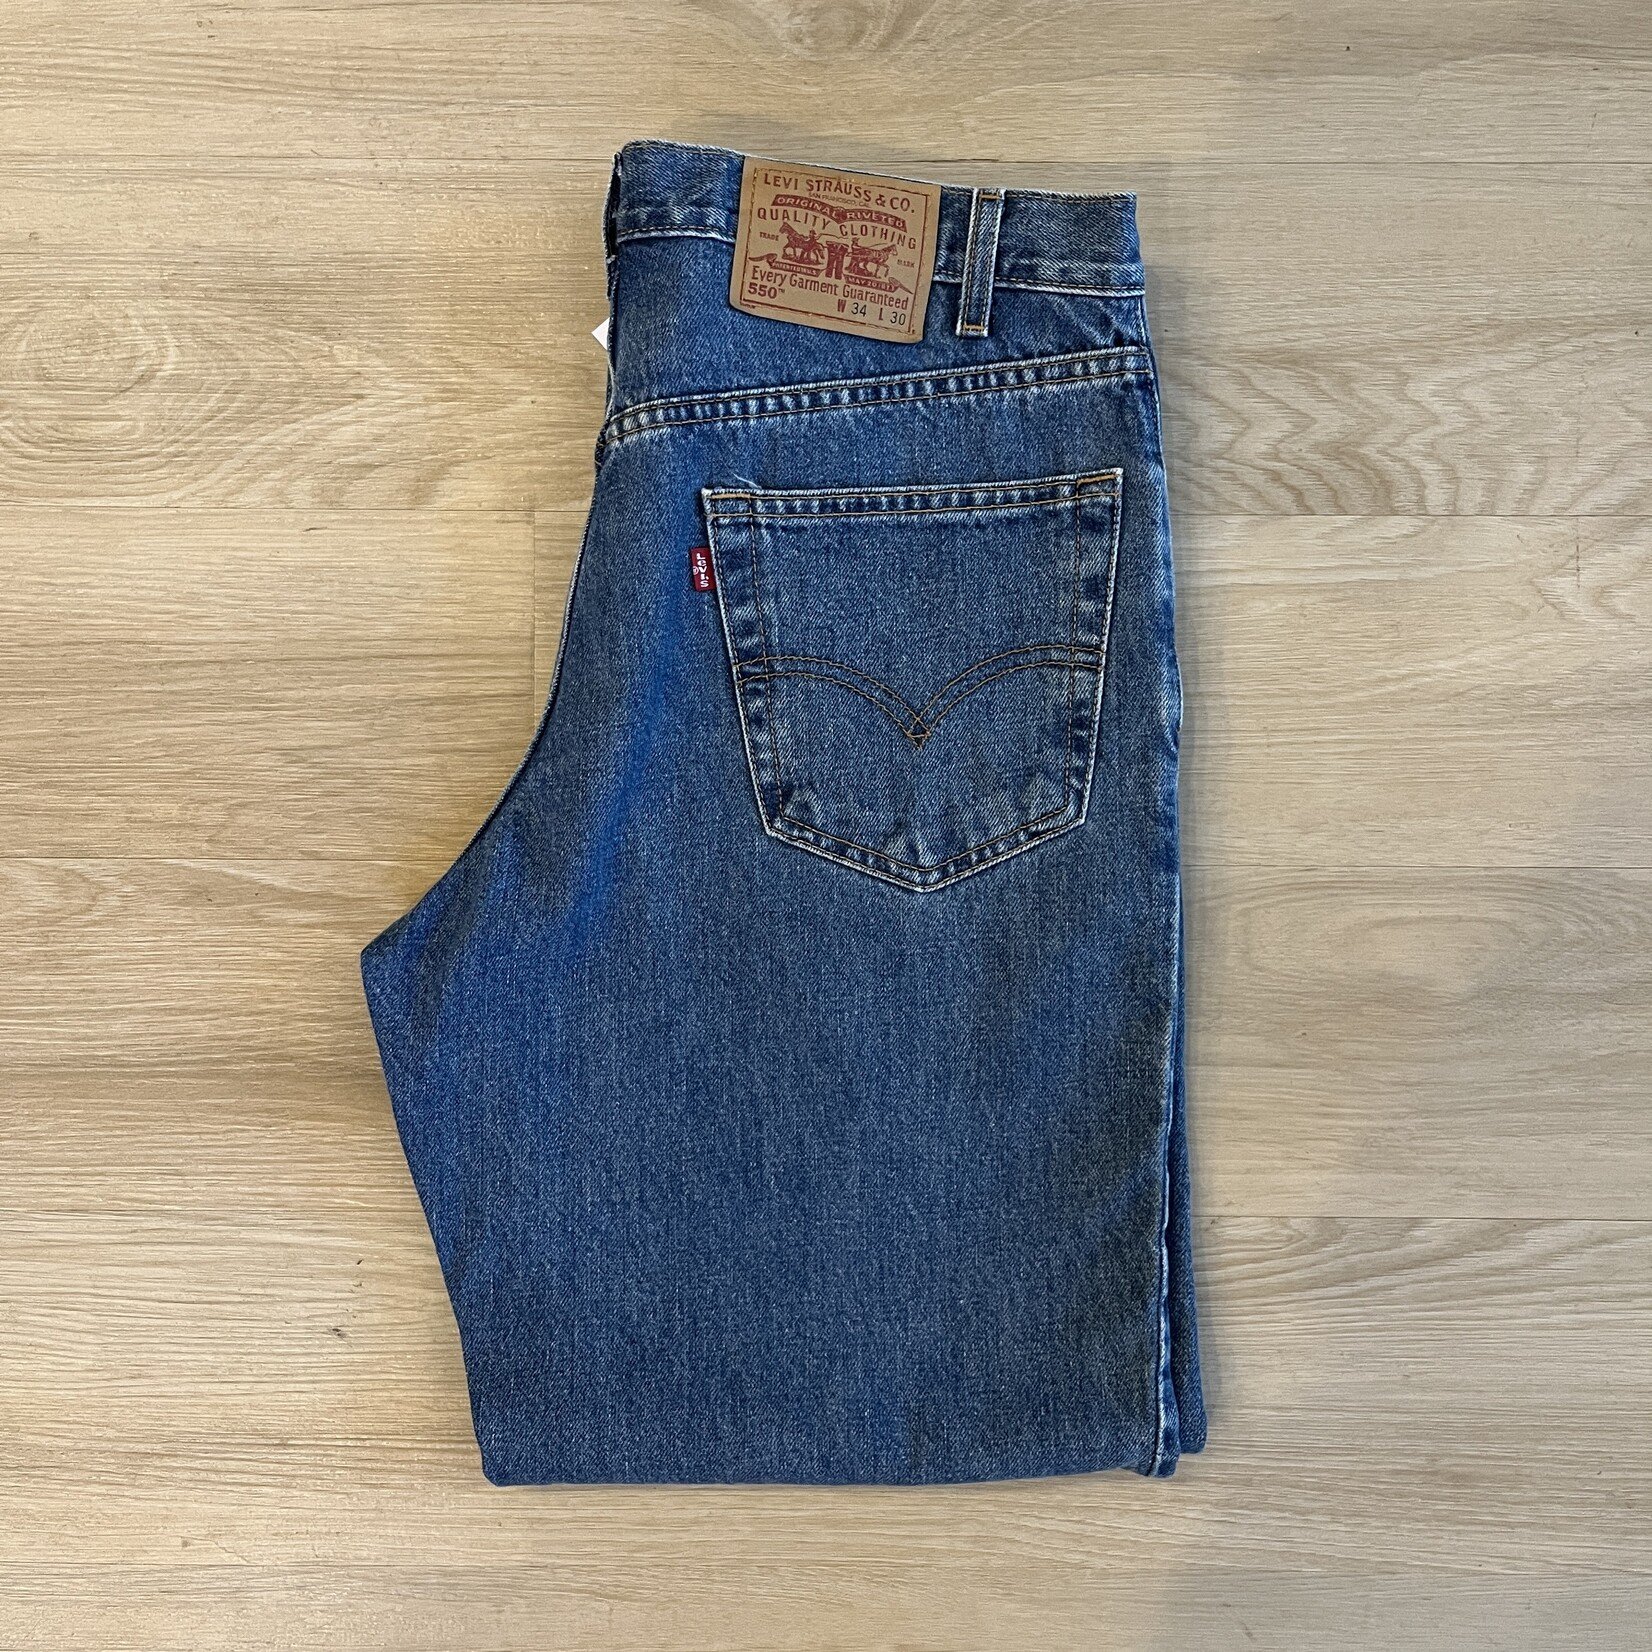 13924	2001 levi's 550 jeans sz 34 x 30